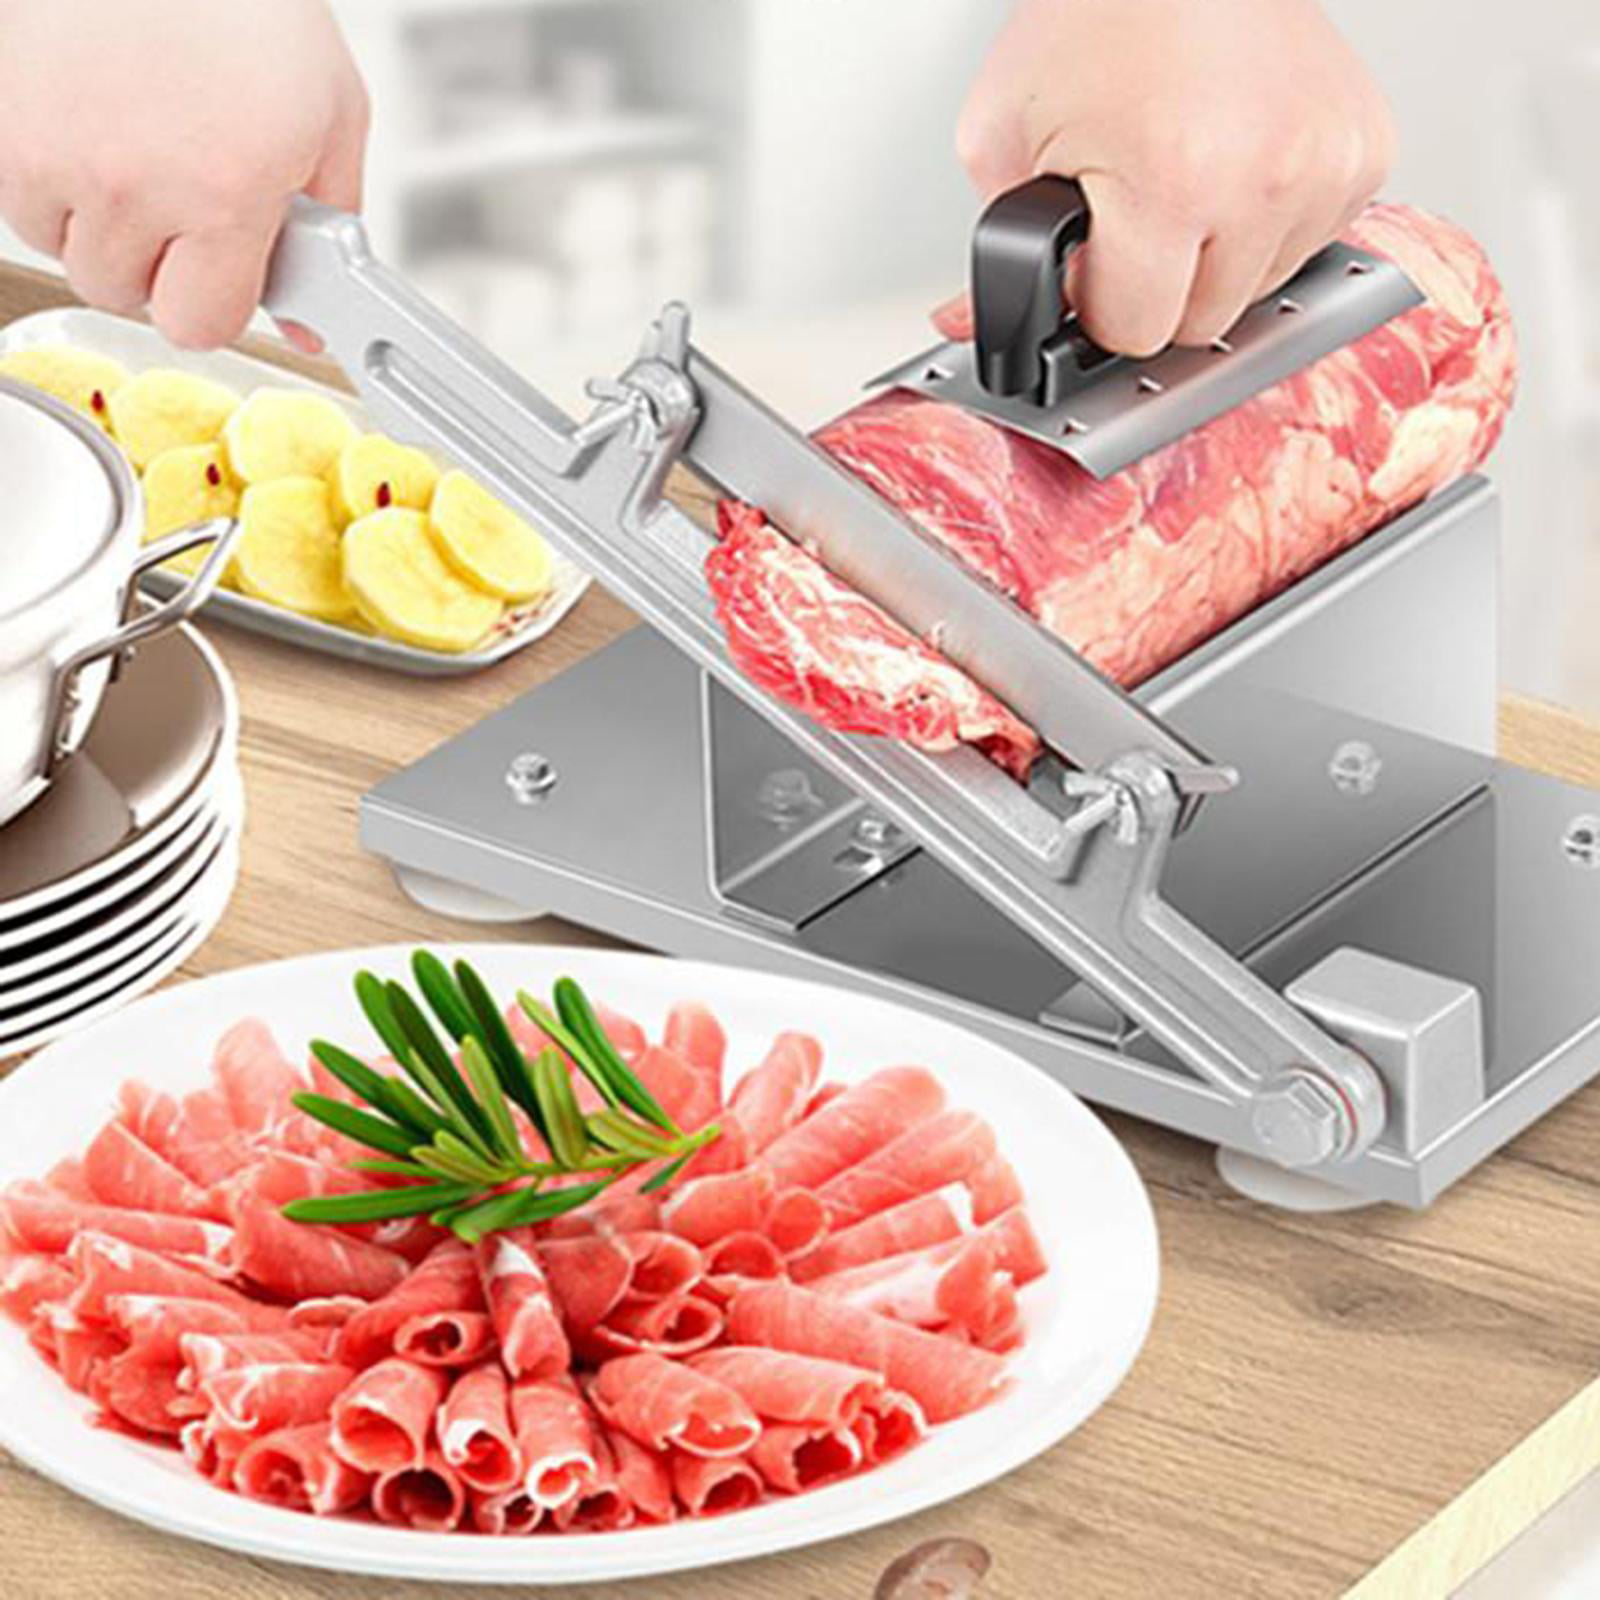 Details about   Frozen Meat Slicer Steel Beef Cutter Thin Cutting Machine Hotpot Sandwiches 